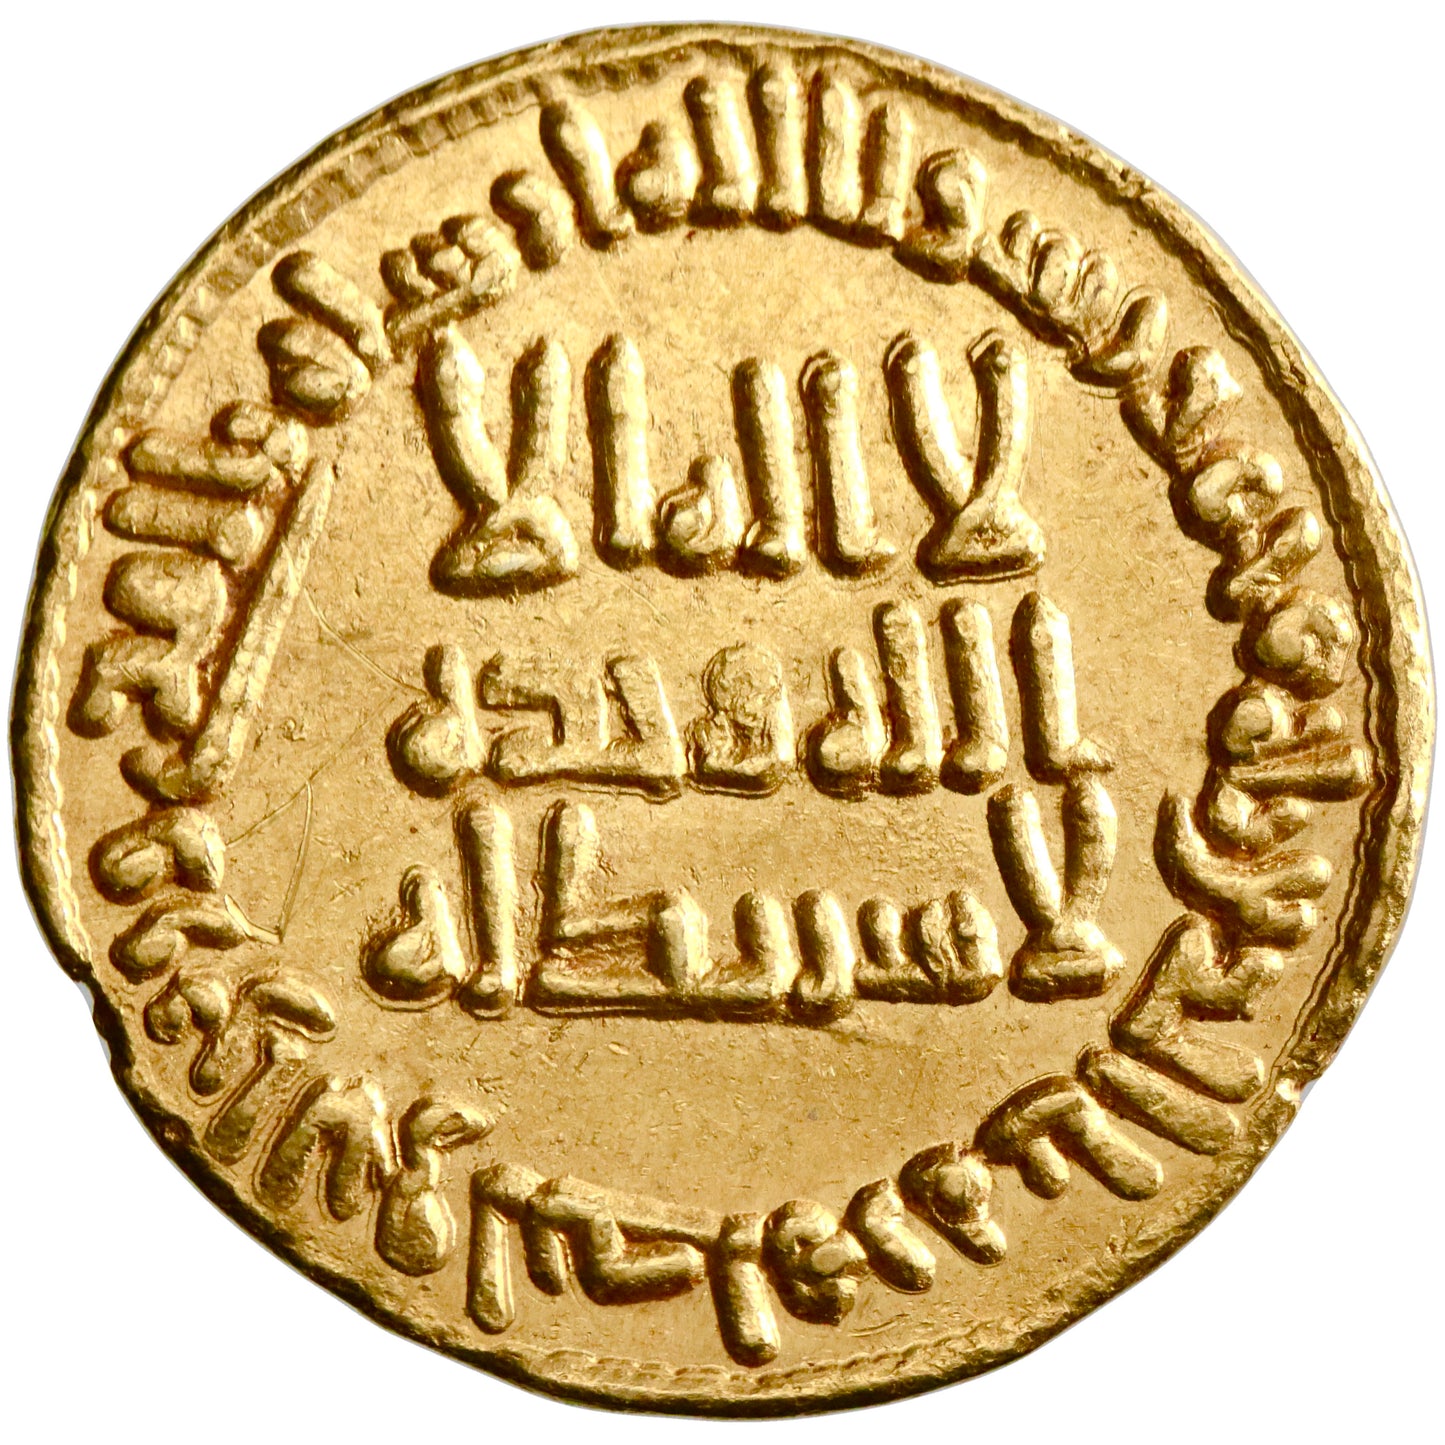 Umayyad, al-Walid I ibn 'Abd al-Malik, gold dinar, AH 95